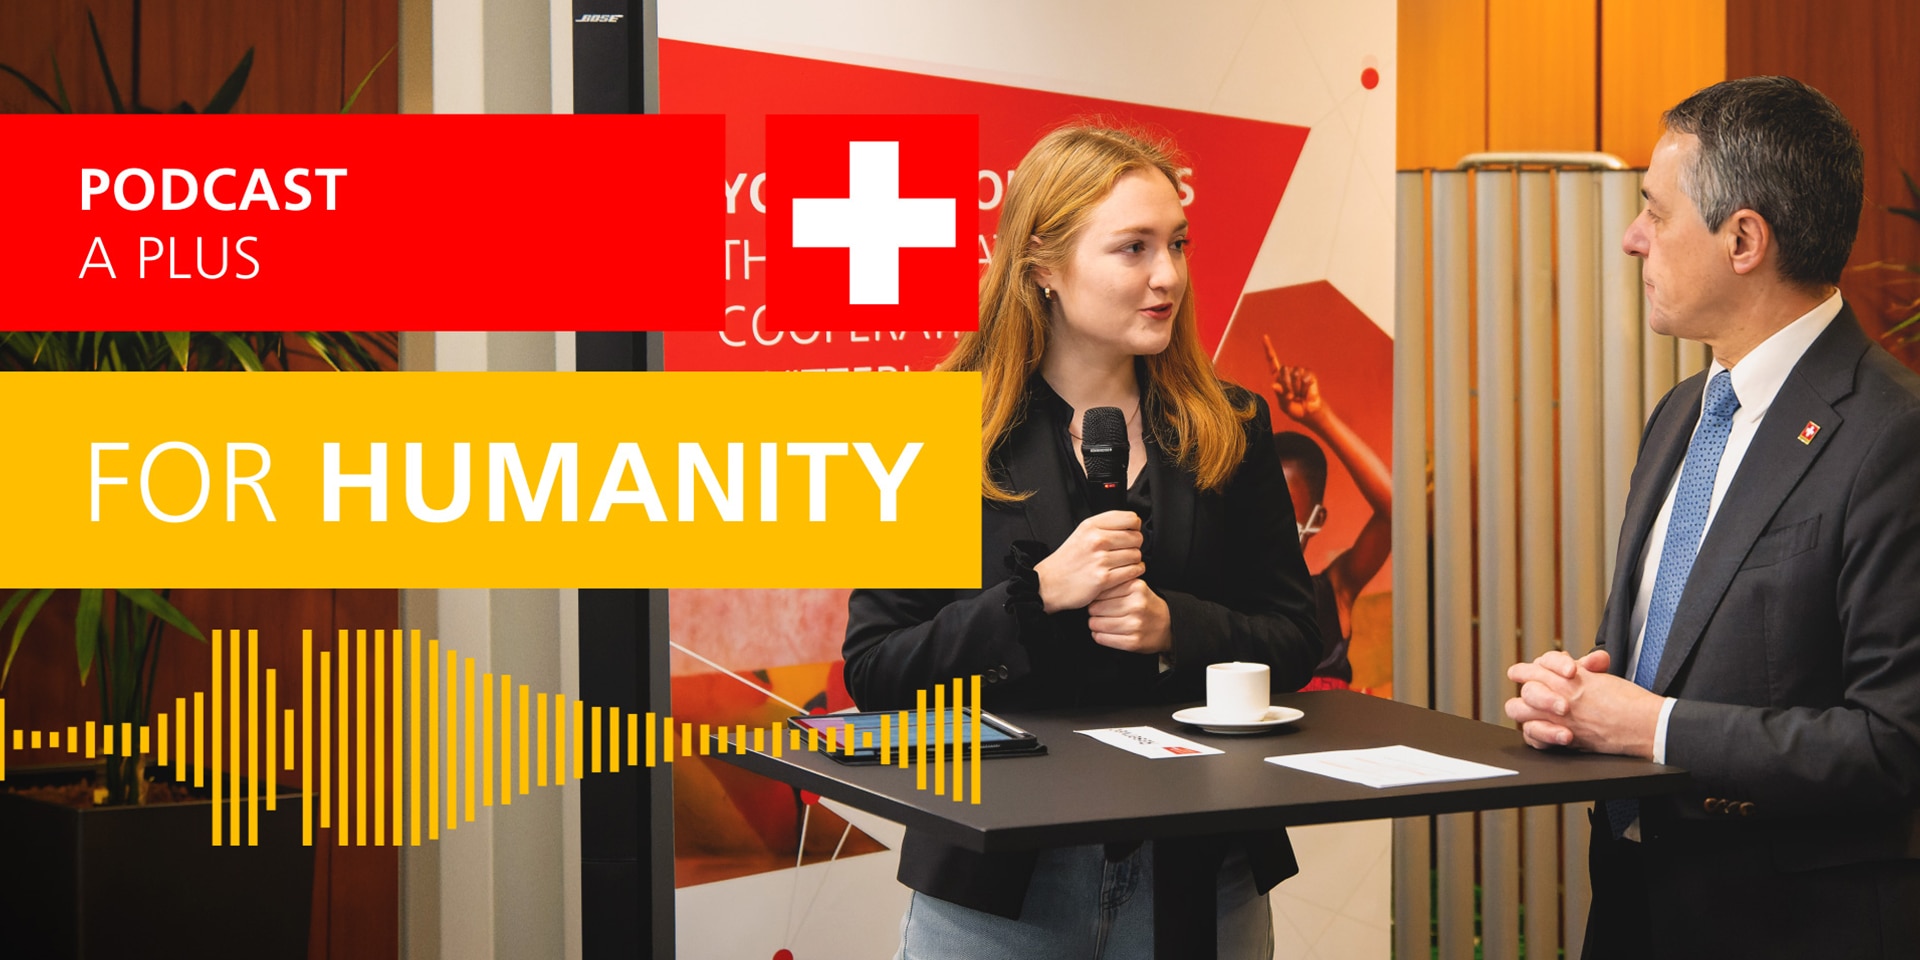 Pour ce 18e épisode du podcast de la DDC, nous avons accompagné Loukina Tille, 21 ans, au Congrès annuel de la coopération internationale de la Suisse, placé sous la devise «Education4future».